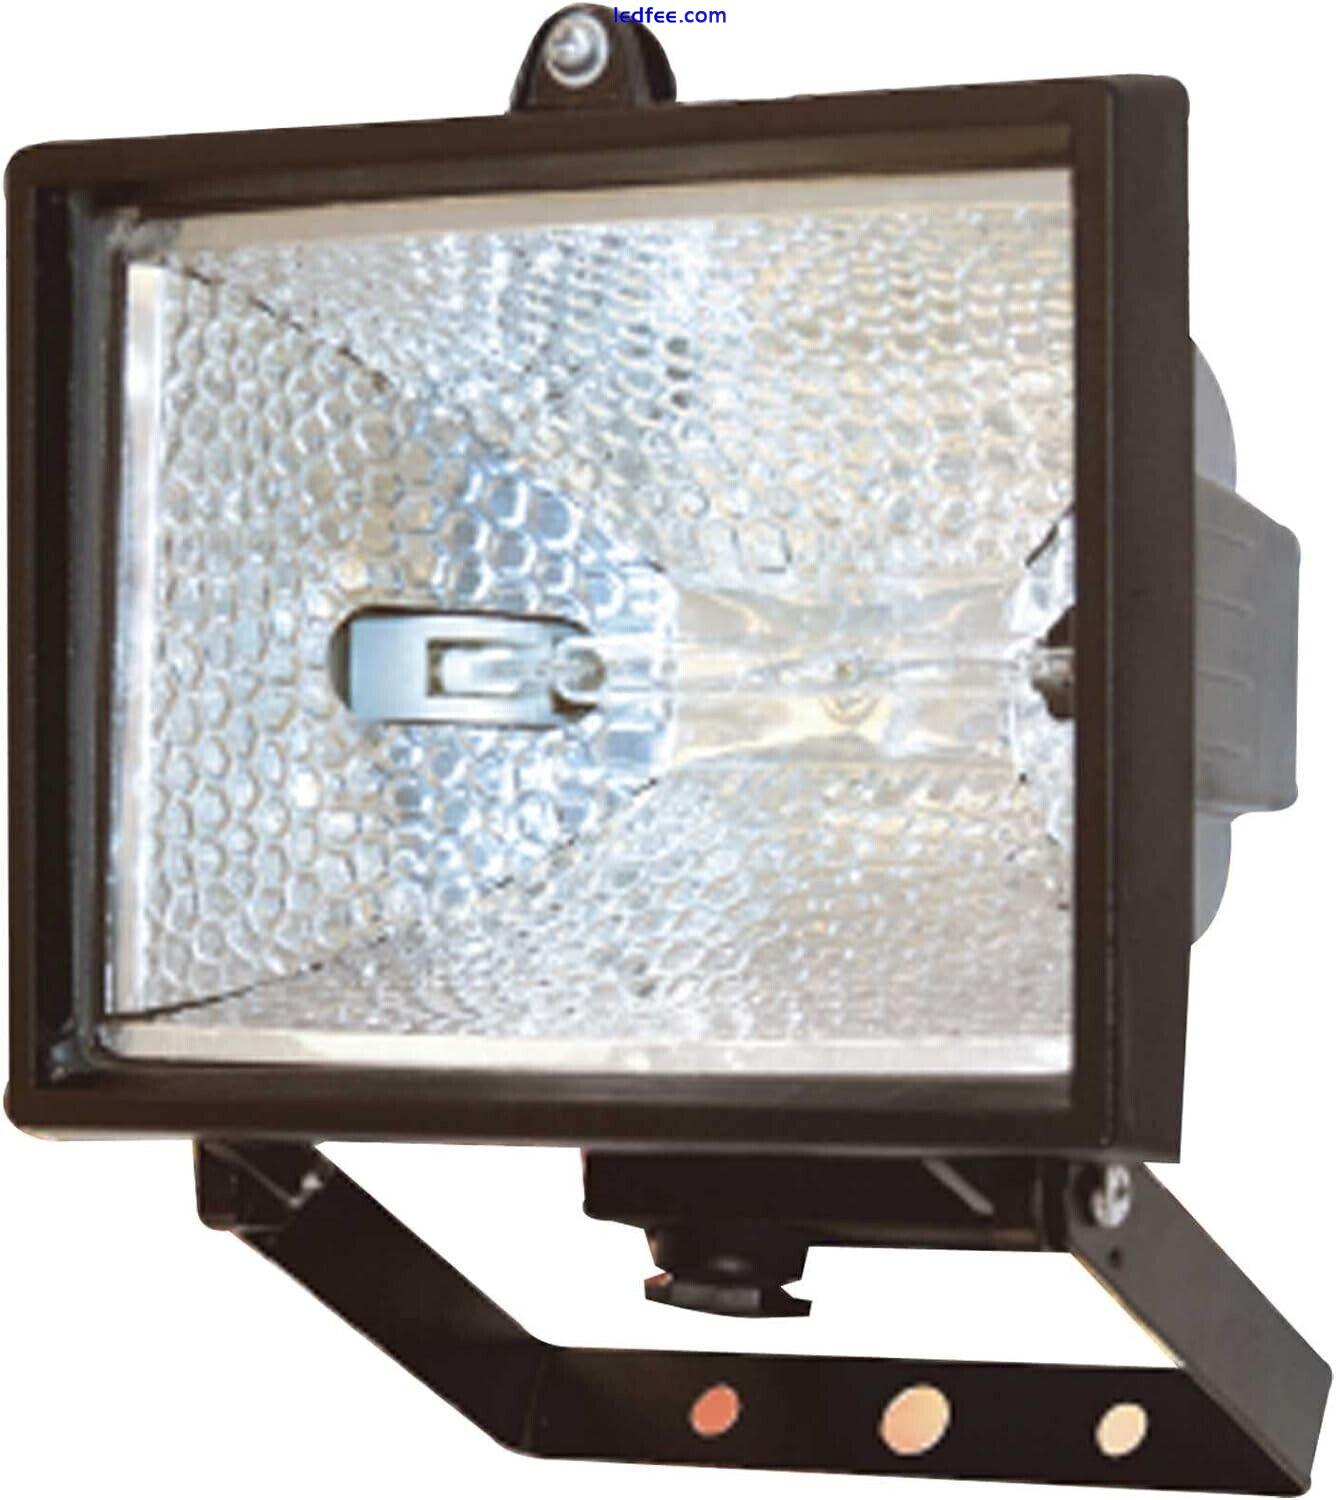 LED Floodlight Outdoor Security Light Flood Garden Motion Sensor PIR Lights 400W 0 